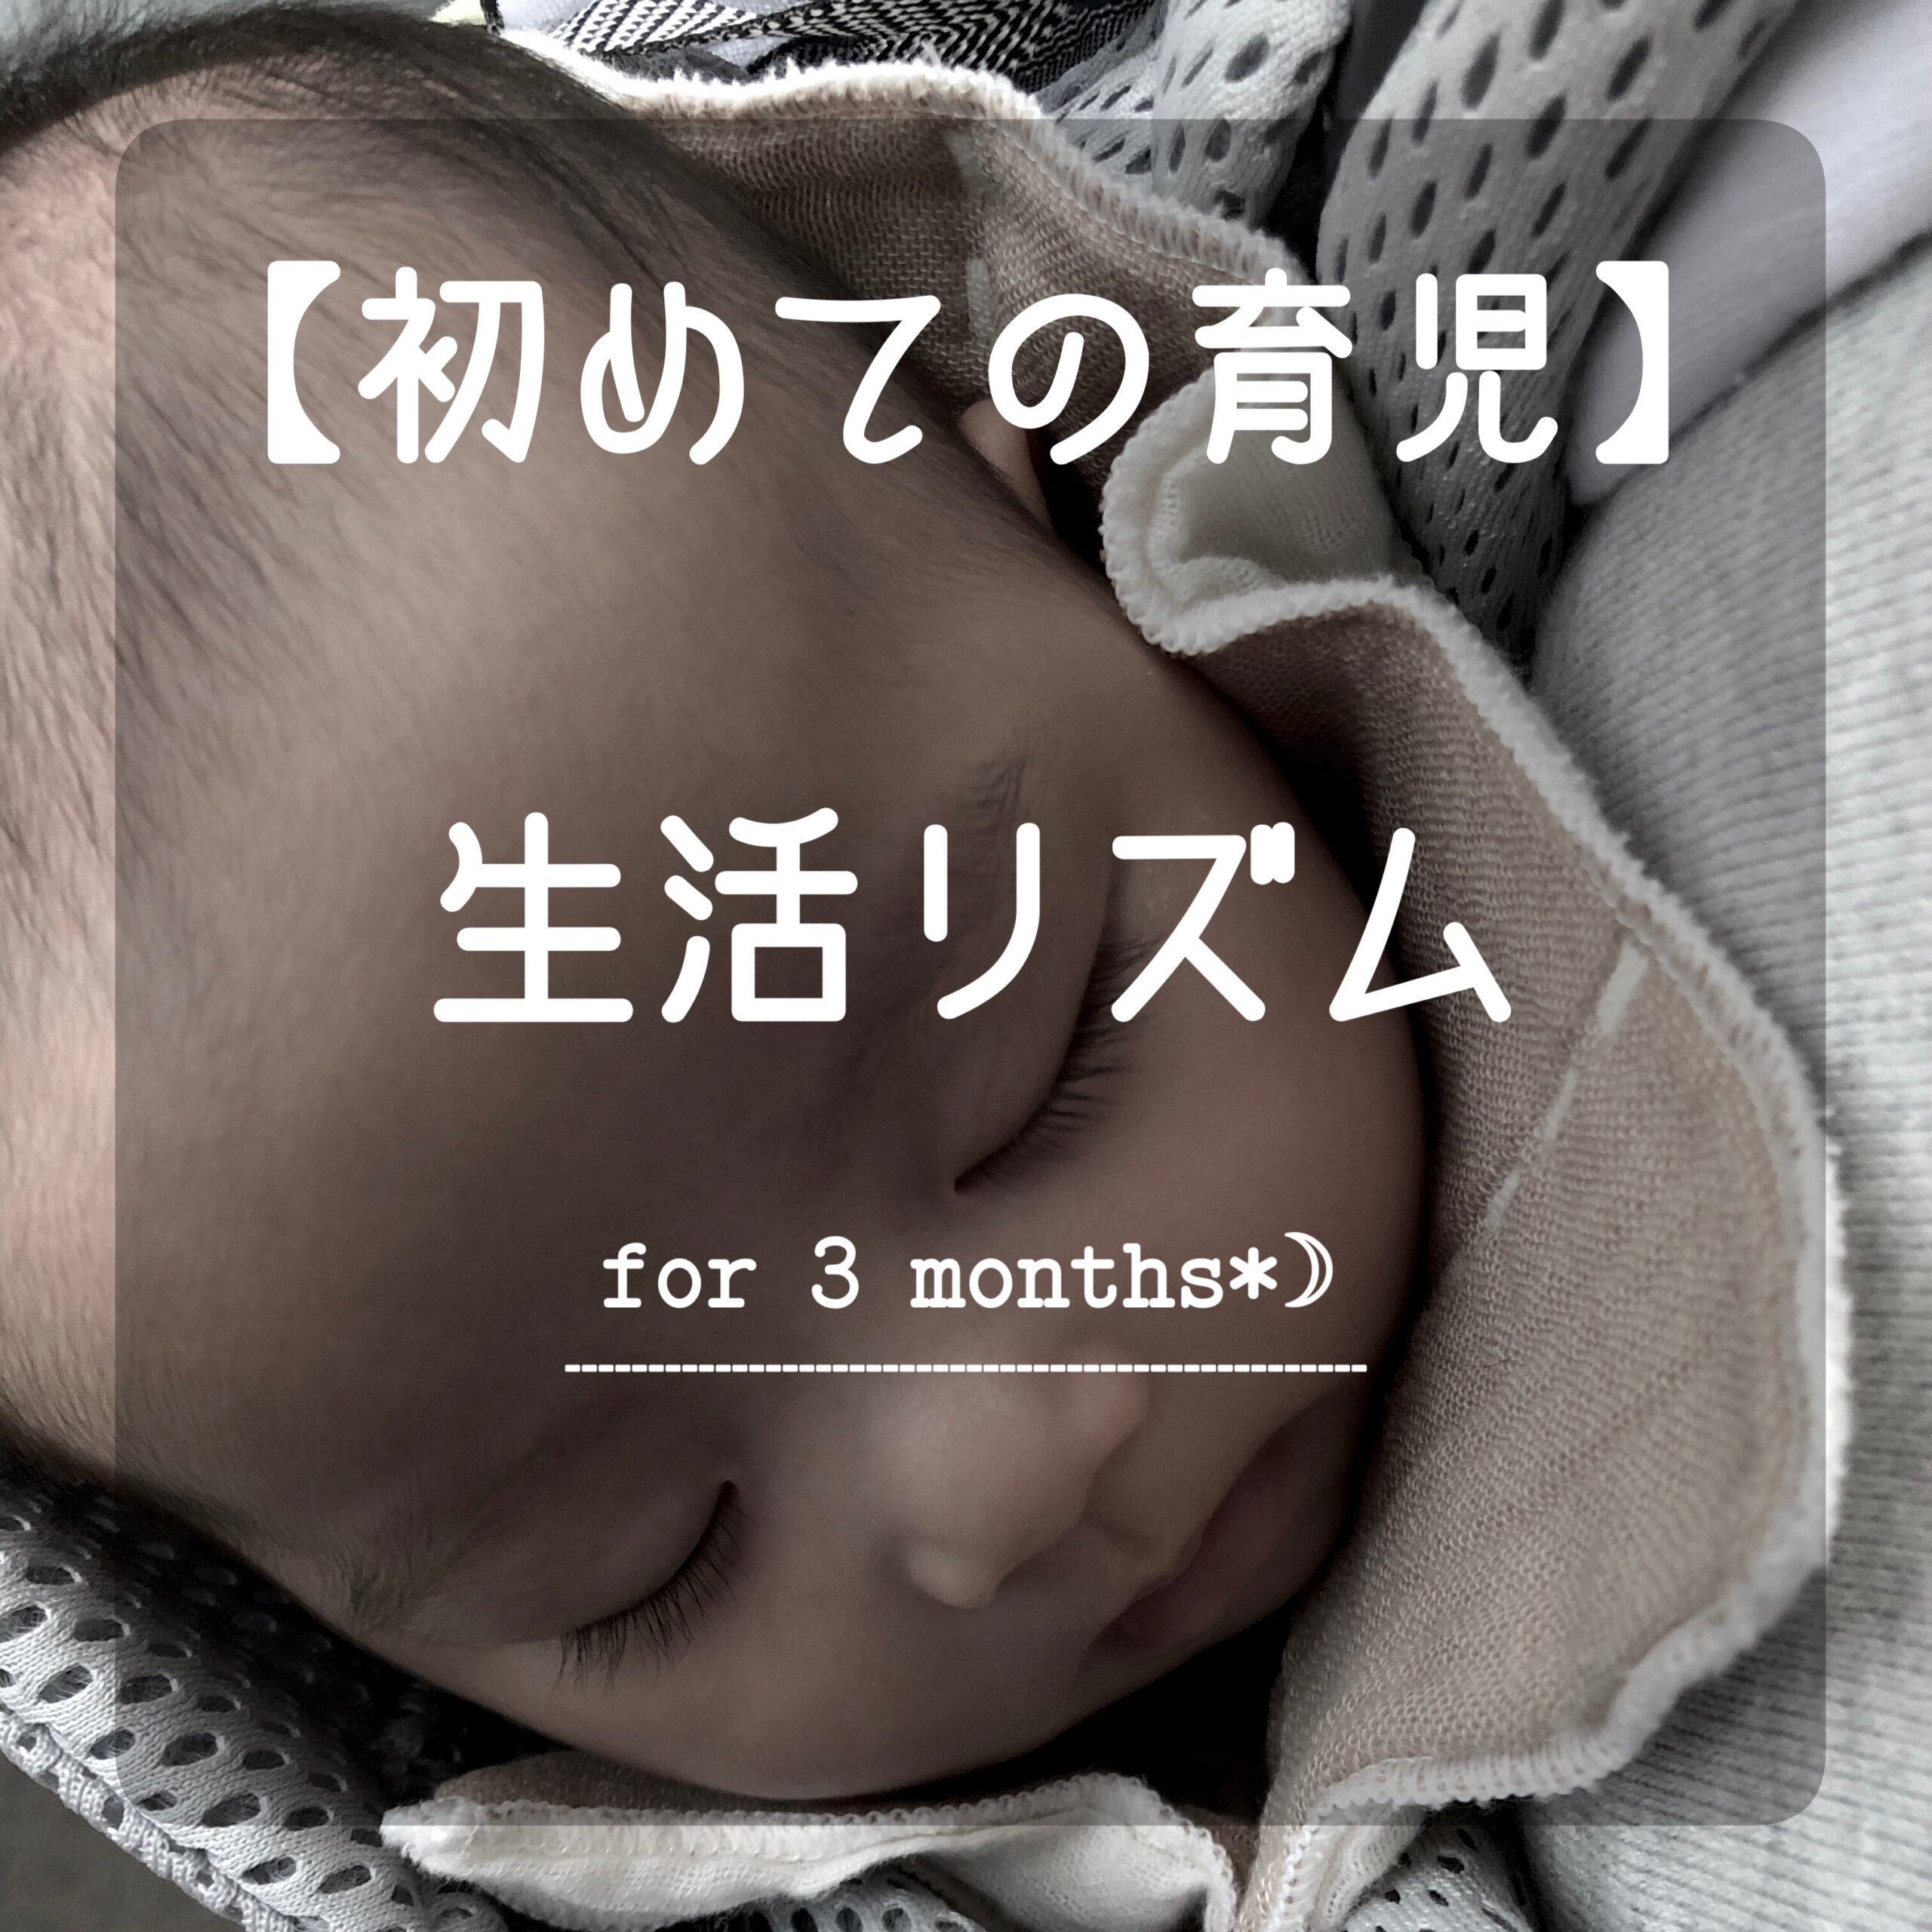 初めて育児 生後3ヶ月から始める生活リズム Yuki Blog